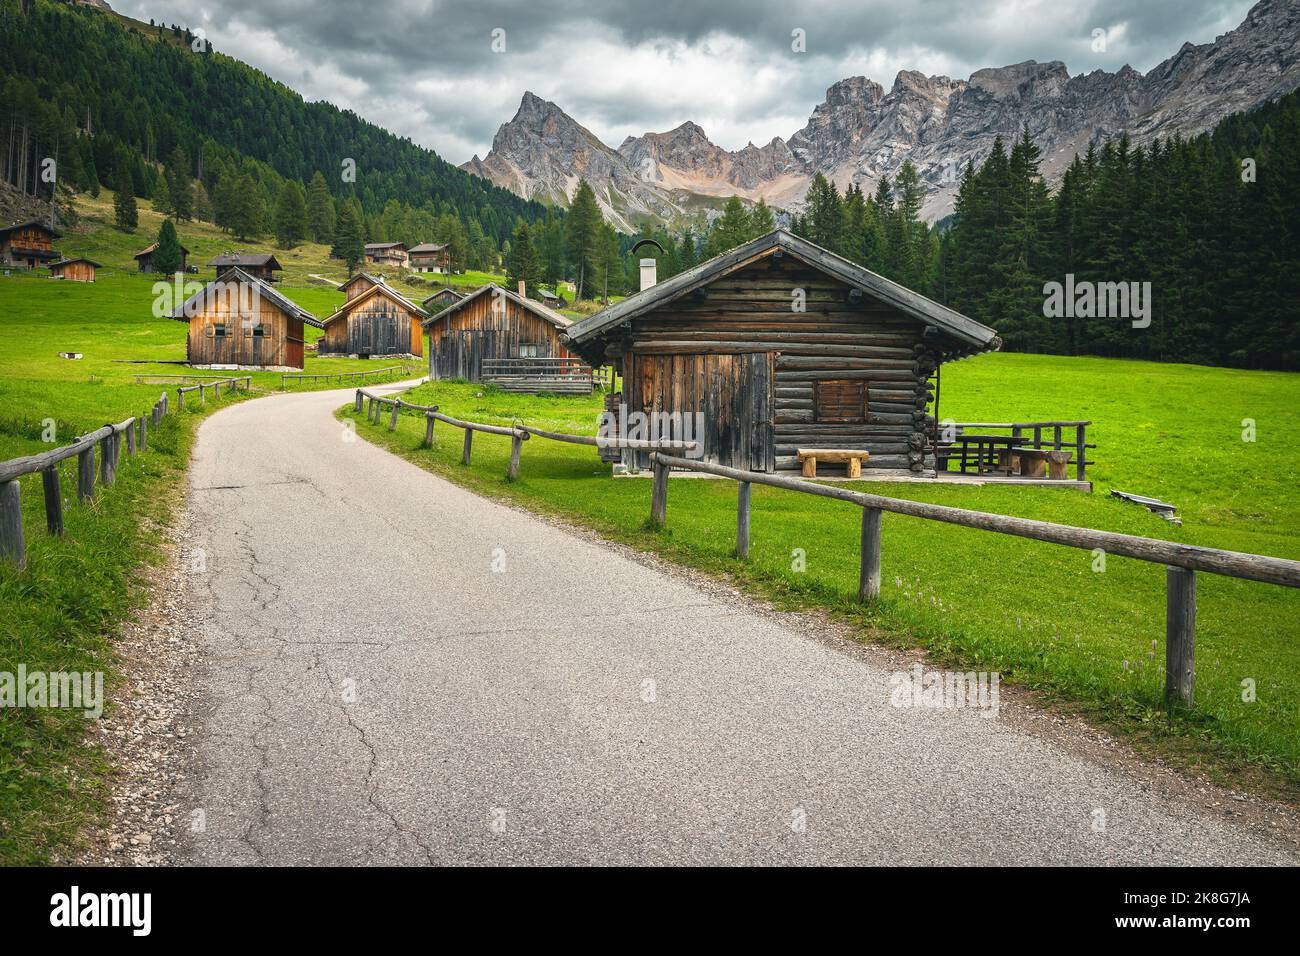 Incroyable vallée de San Nicolo avec des cabanes en bois et des montagnes spectaculaires en arrière-plan, Dolomites, Italie, Europe Banque D'Images